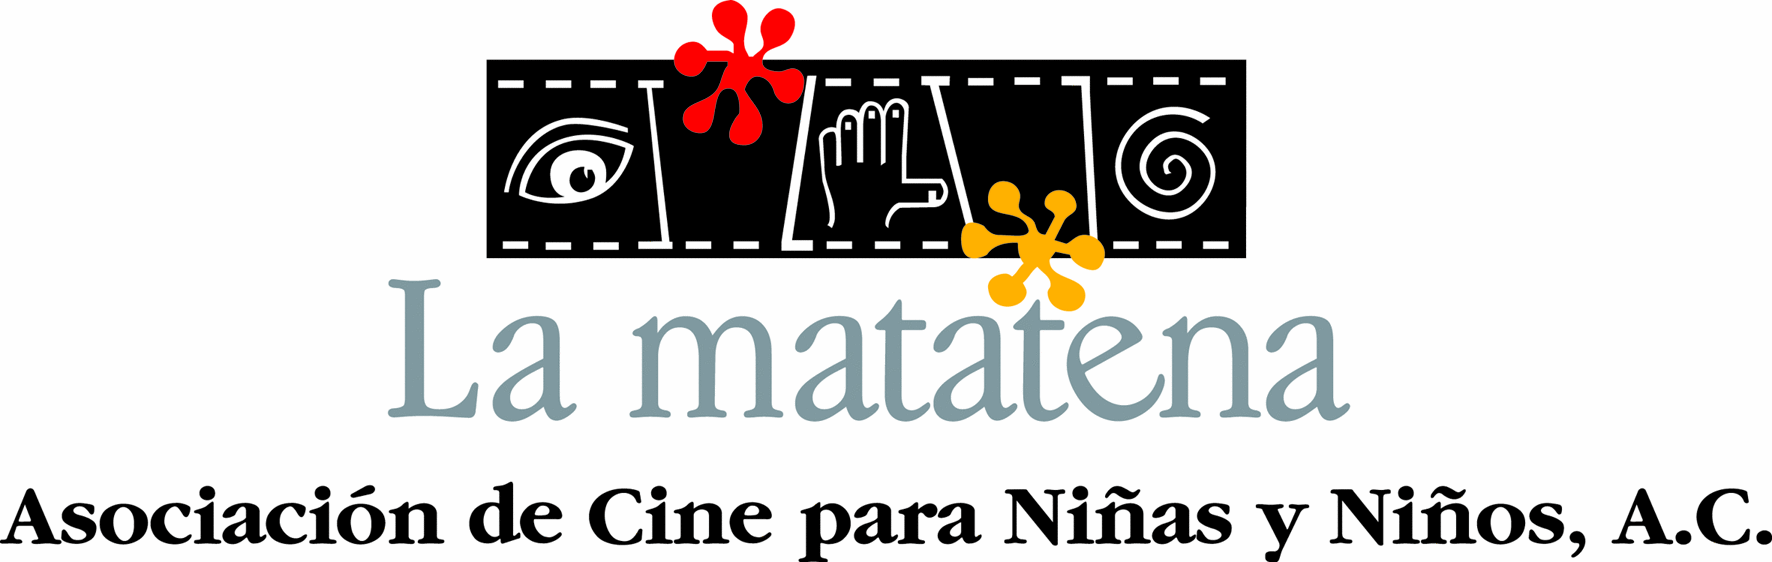 Logotipo de La Matatena, A.C., tiff, 1772x562 píxeles, 300 dpi, 3,8 MO